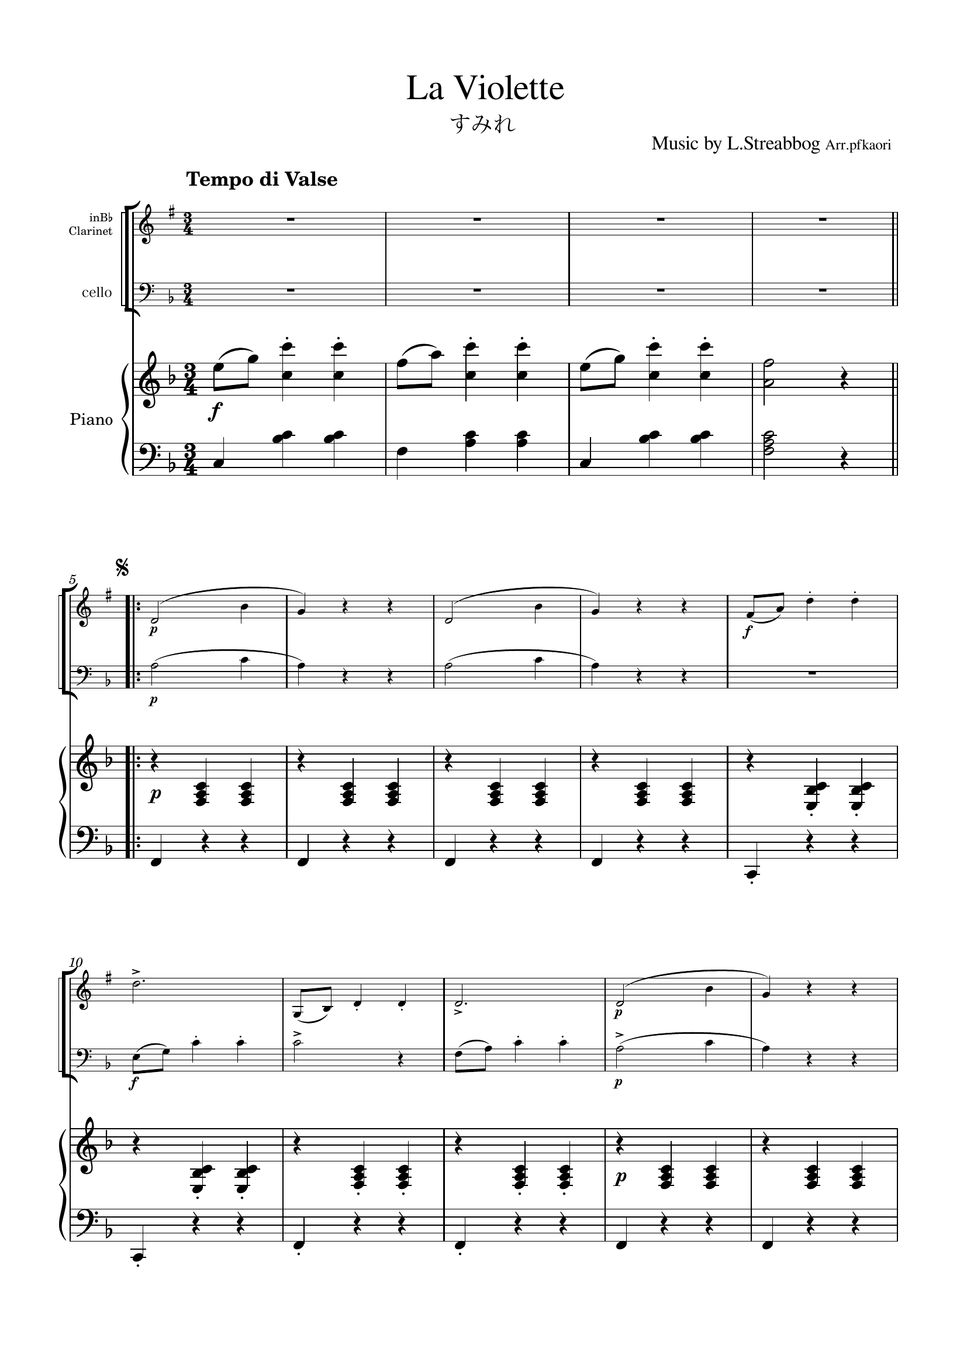 Strea bogg - La Violette (Piano trio / Clarinet & Cello) by pfkaori